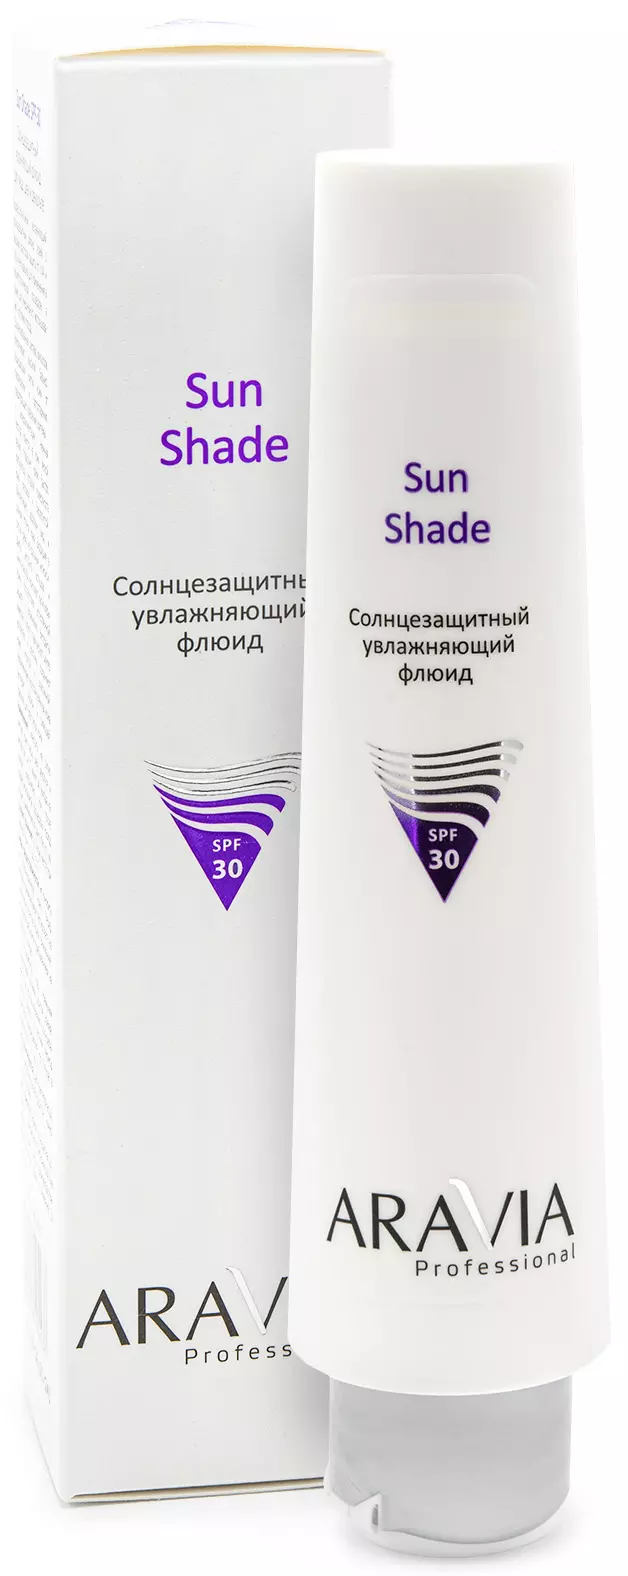 Aravia Professional Sun Shade SPF-30 - Флюид солнцезащитный увлажняющий для лица, 100 мл